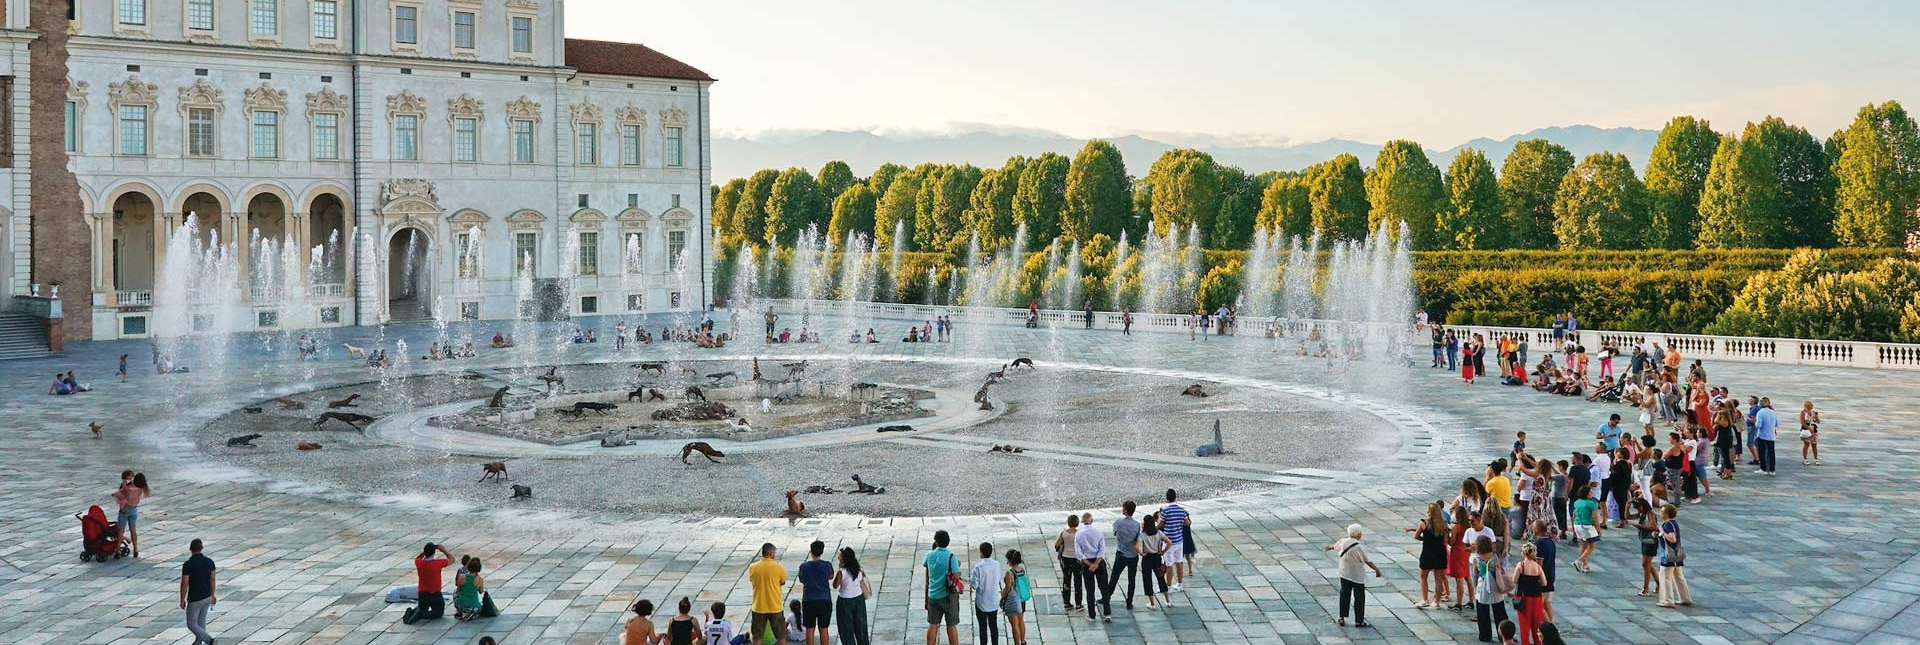 Teatro d'acqua nella Fontana del Cervo - foto di Michele d'Ottavio